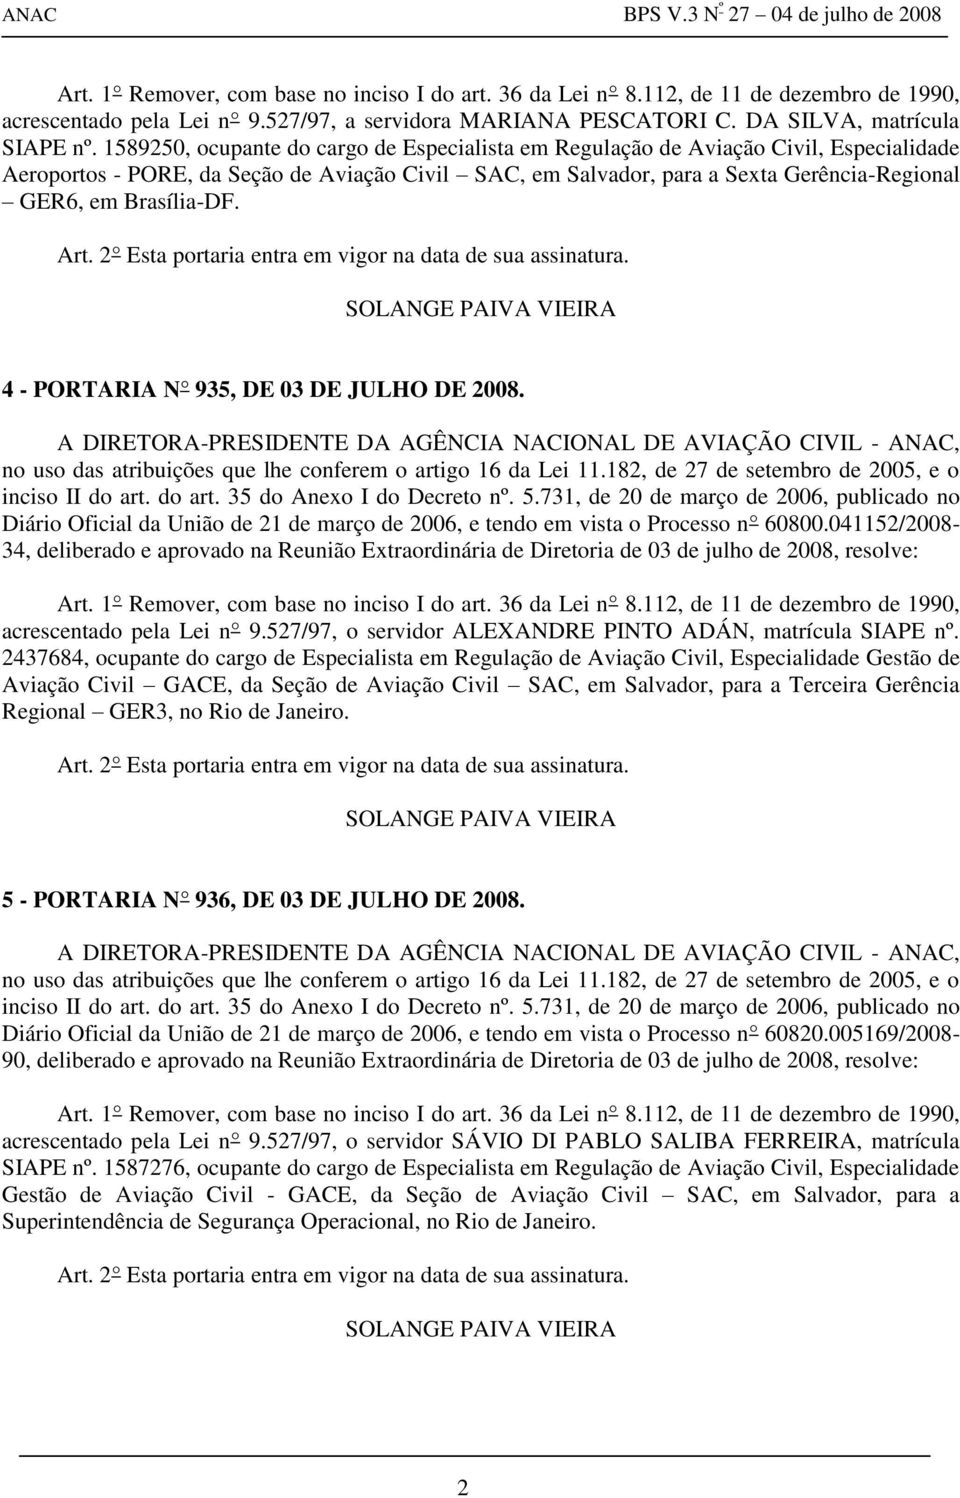 Brasília-DF. 4 - PORTARIA N 935, DE 03 DE JULHO DE 2008. Diário Oficial da União de 21 de março de 2006, e tendo em vista o Processo n 60800.